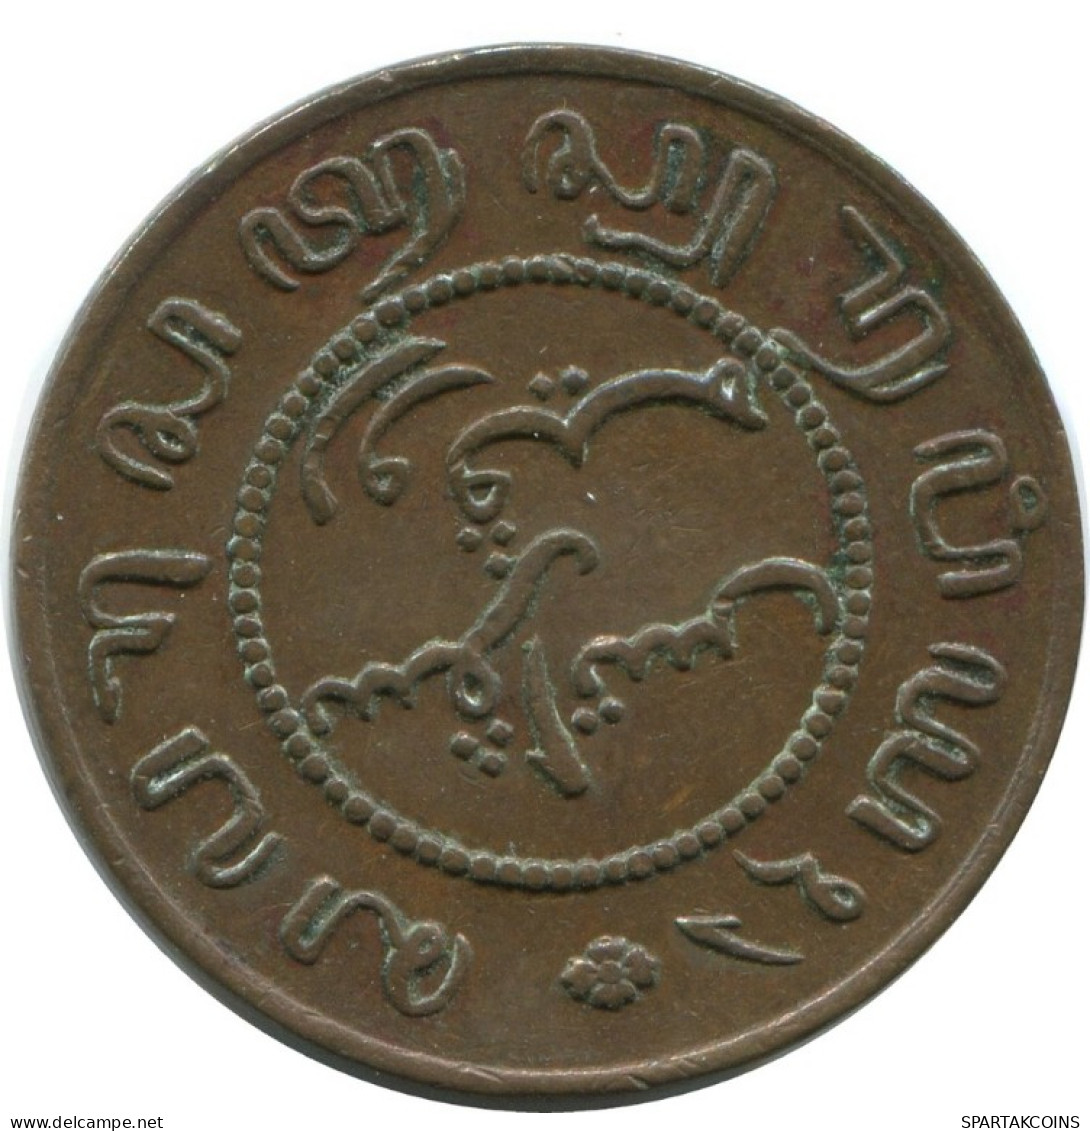 1857 1 CENT INDIAS ORIENTALES DE LOS PAÍSES BAJOS #AE847.27.E.A - Dutch East Indies